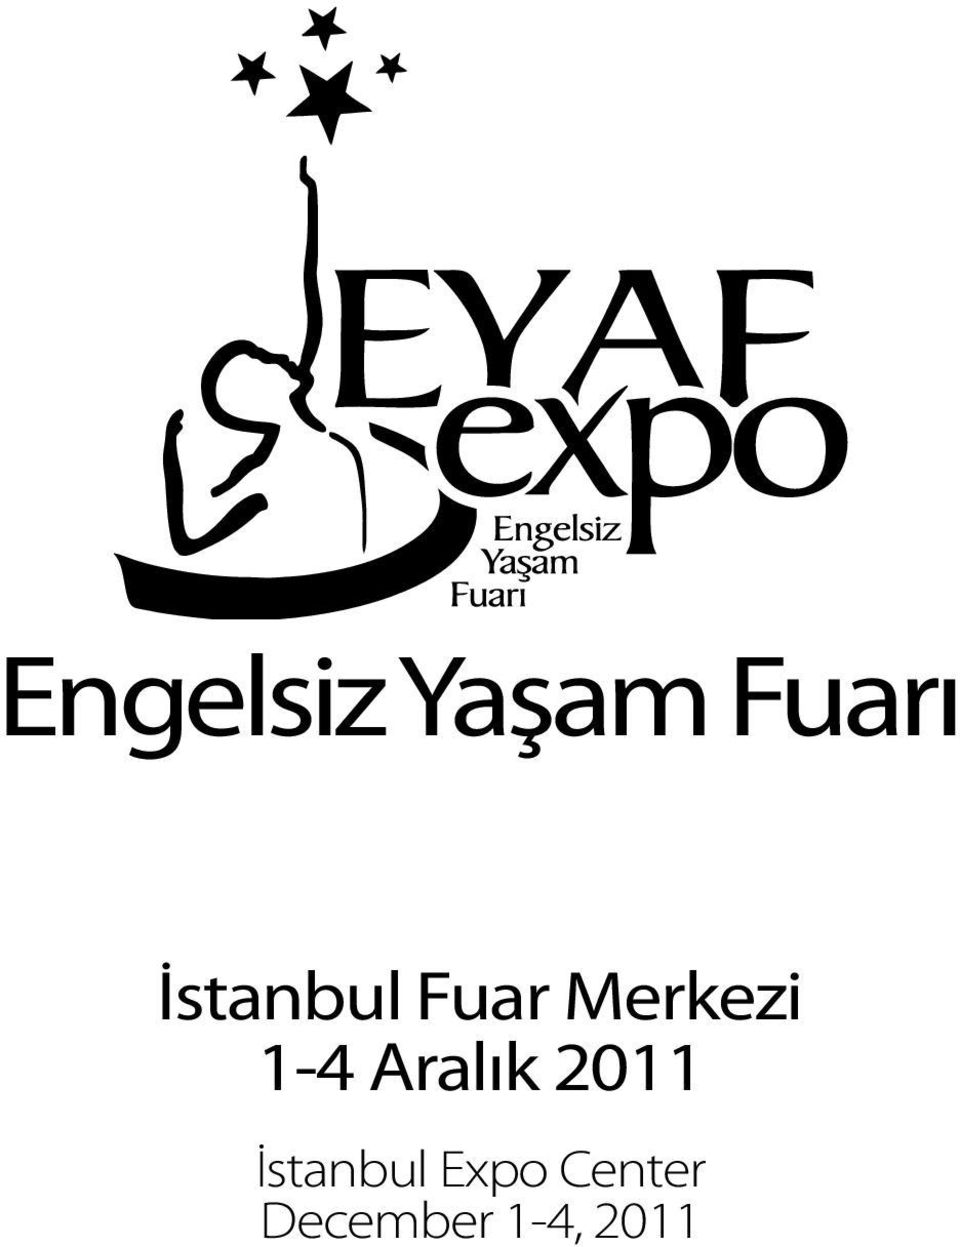 1-4 Aralık 2011 İstanbul